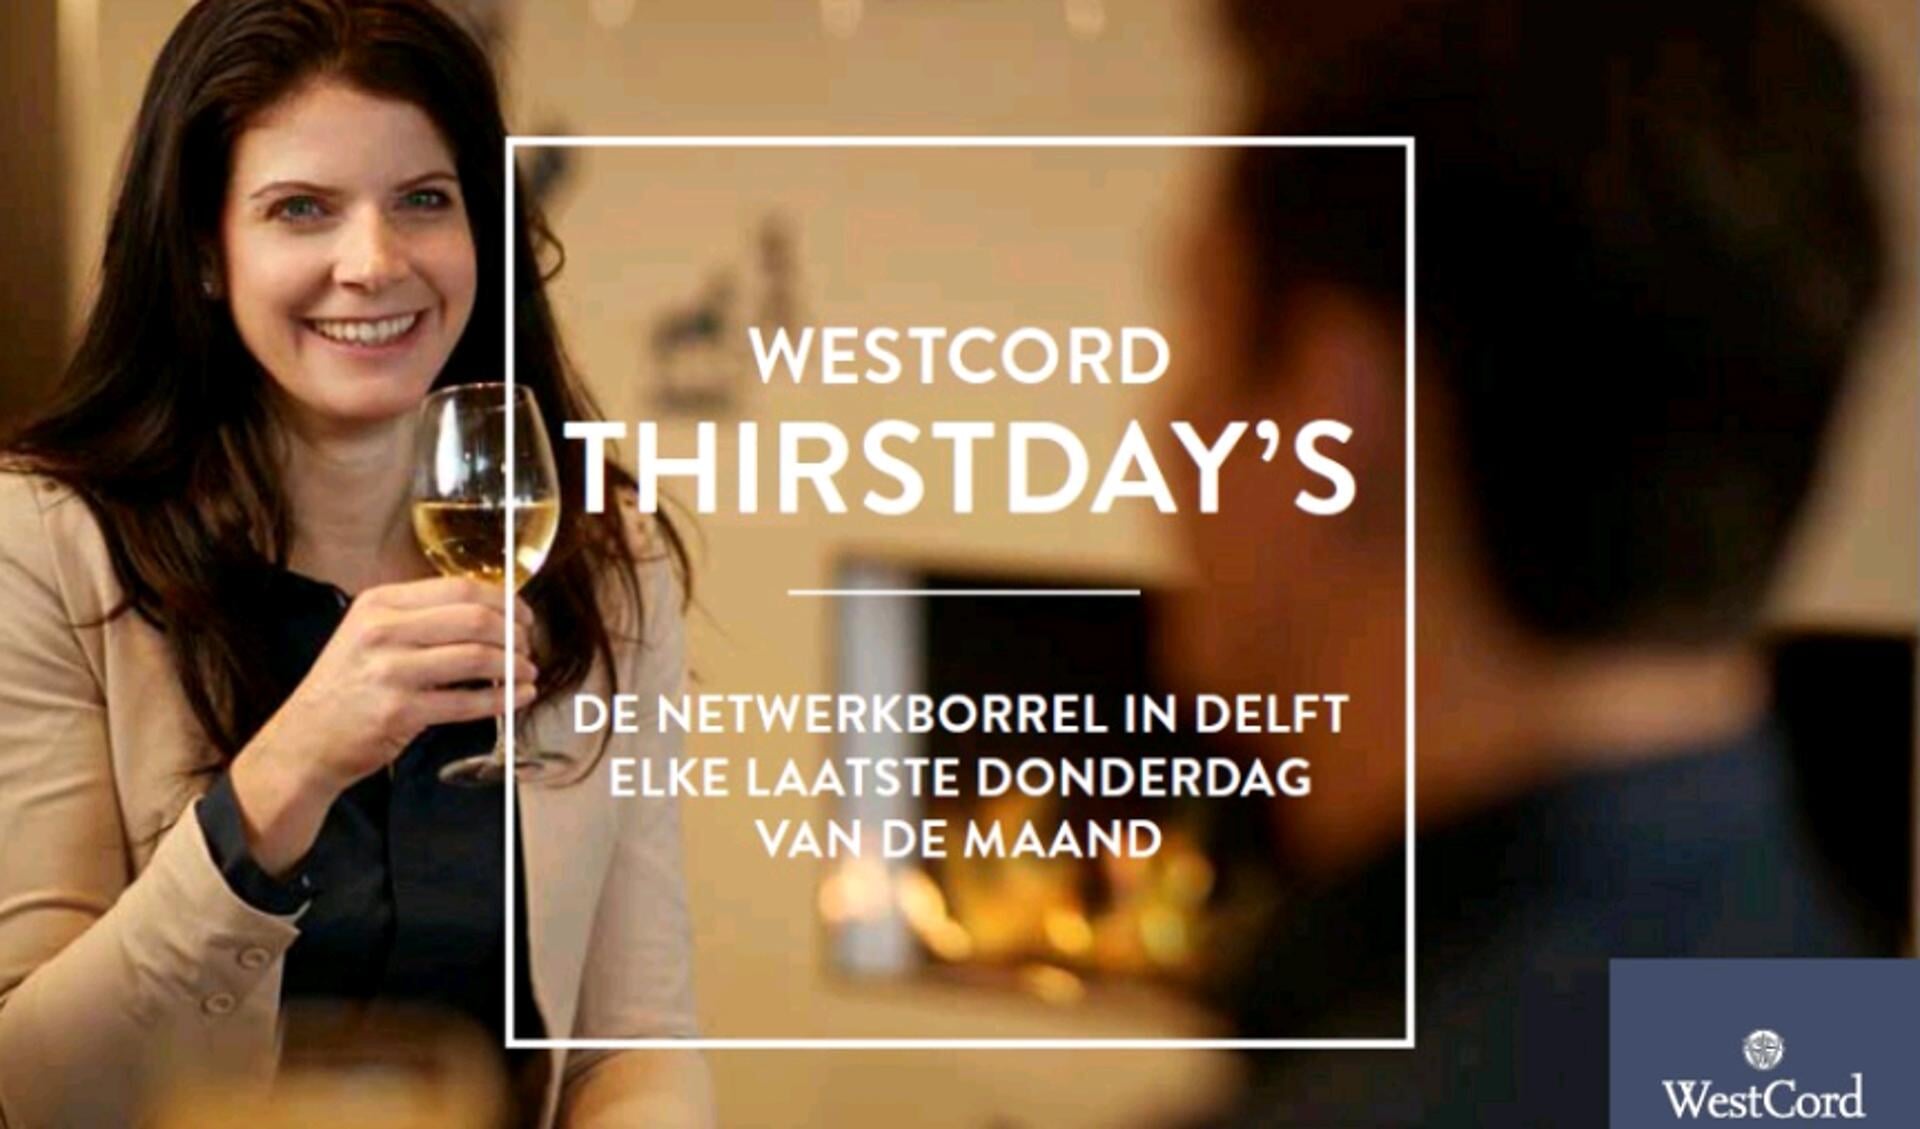 Elke laatste donderdag van de maand, van 17:00 tot 20:00 uur, organiseert WestCord Hotel Delft de 'WestCord ThirstDay's'.